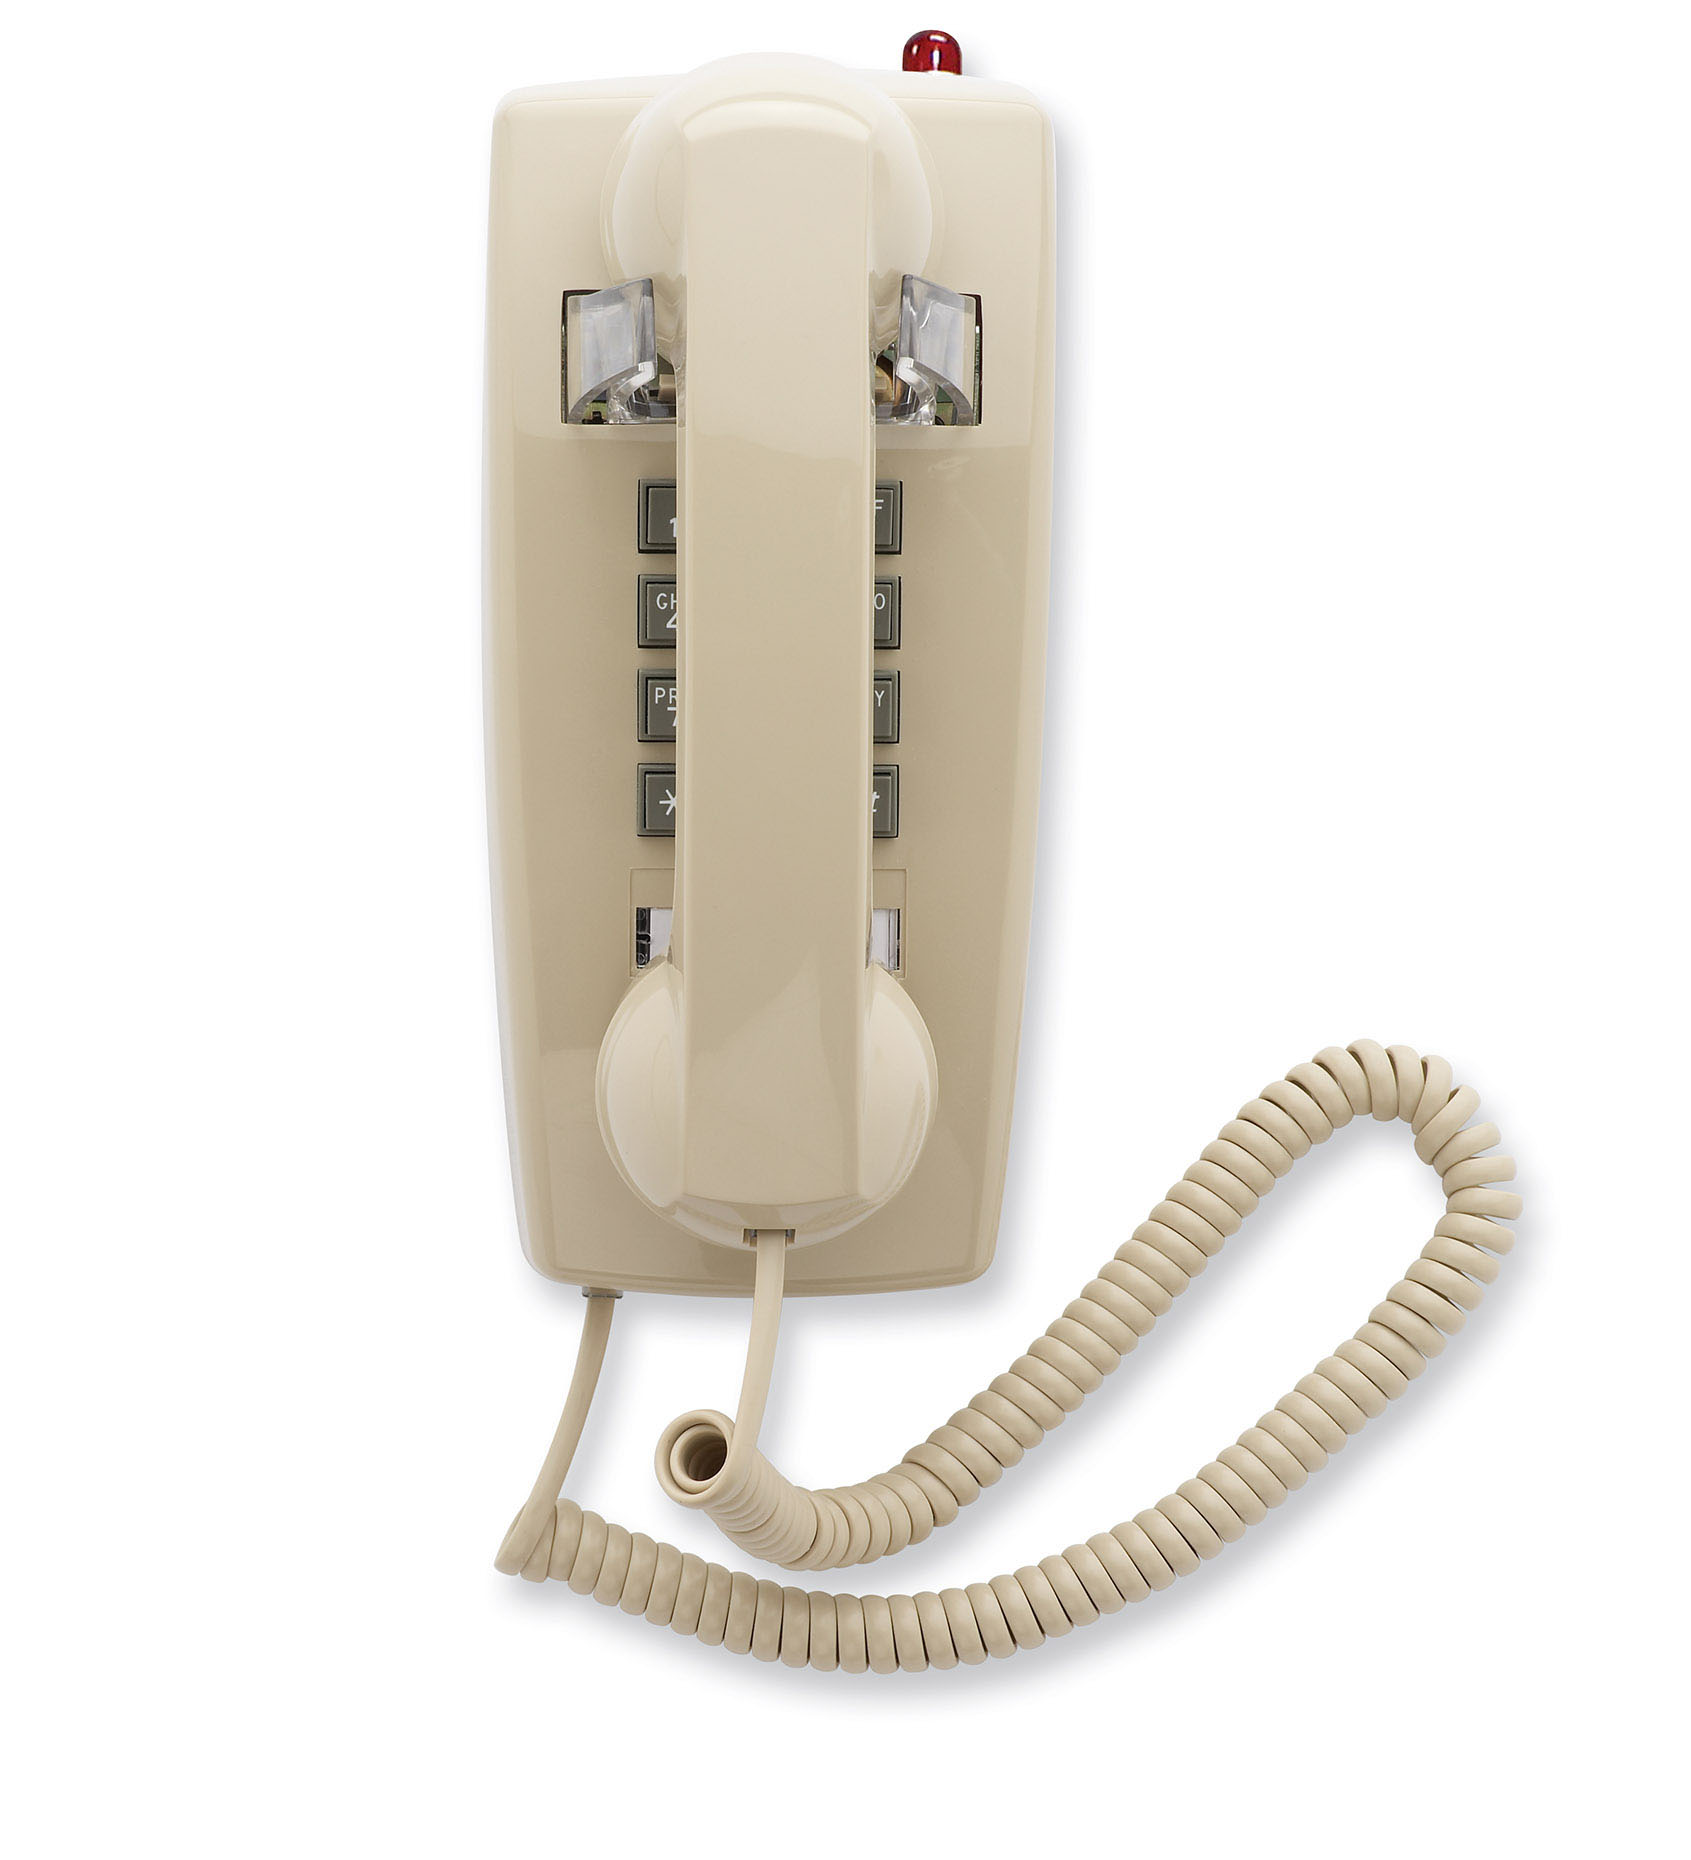 Ghekko telecom equipment - Scitec 2500 Series phones